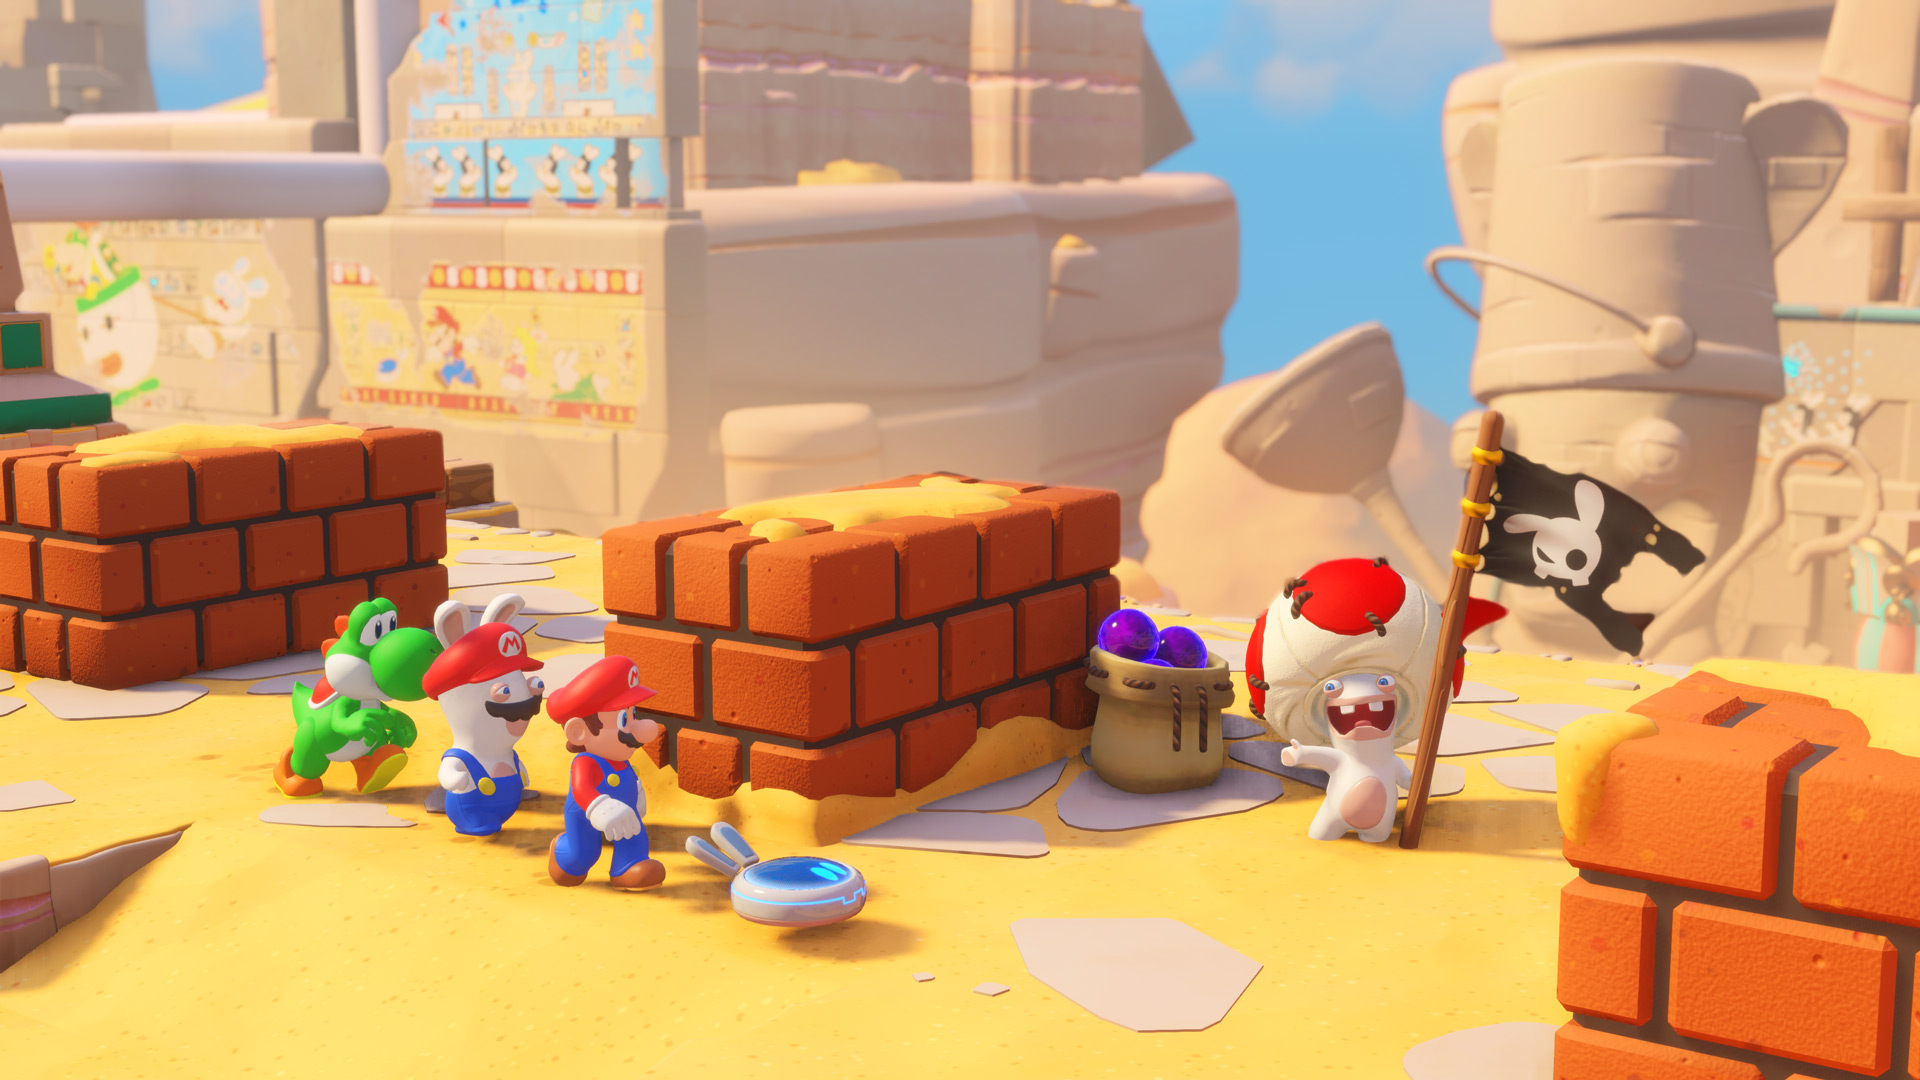 Exploring in Mario + Rabbids: Kingdom Battle